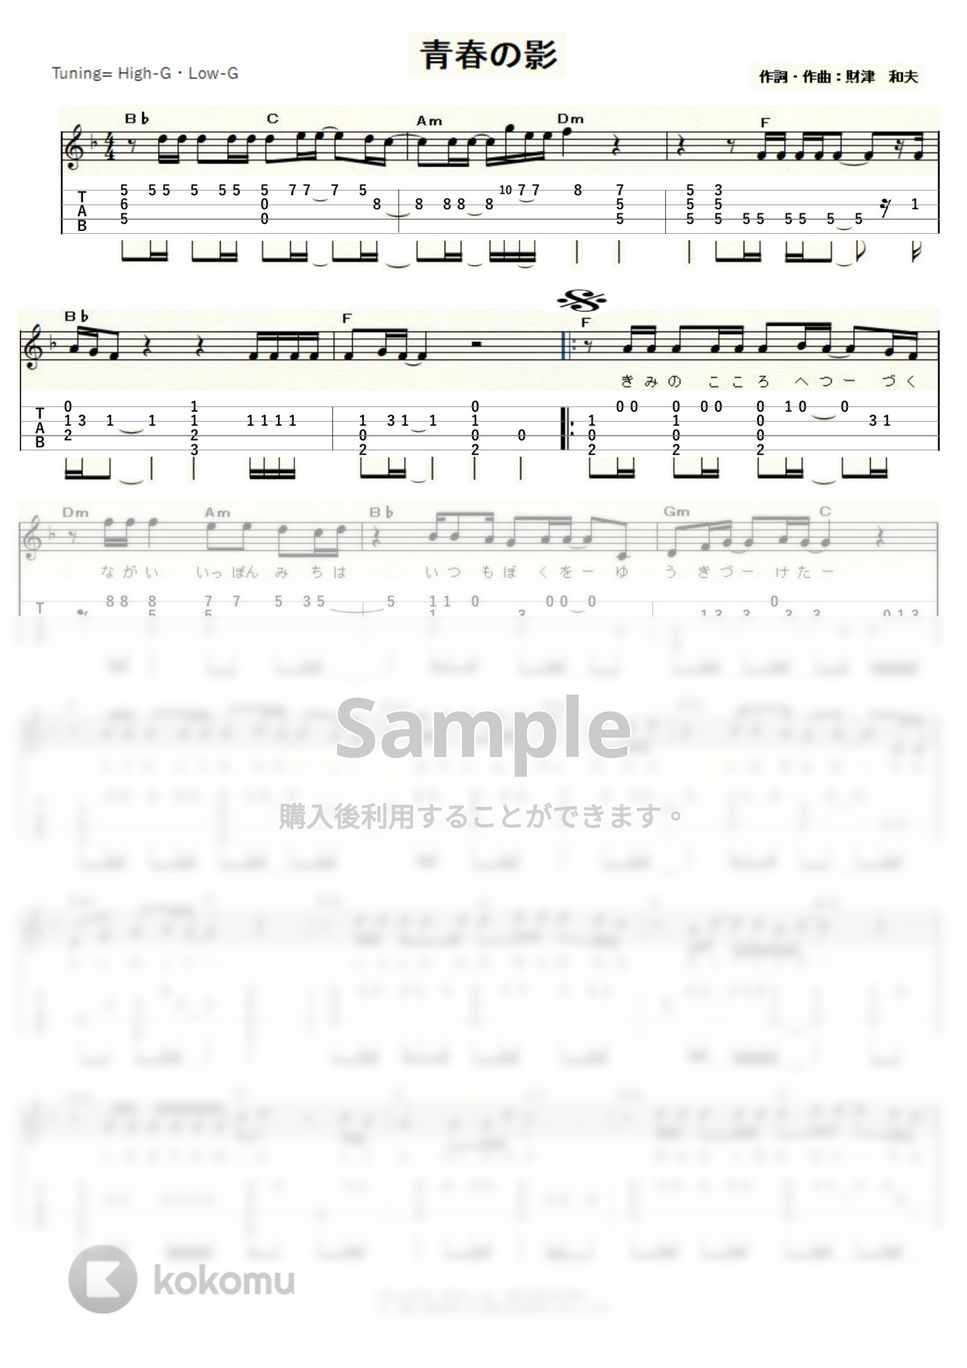 チューリップ - 青春の影 (High-G,Low-G) by ukulelepapa